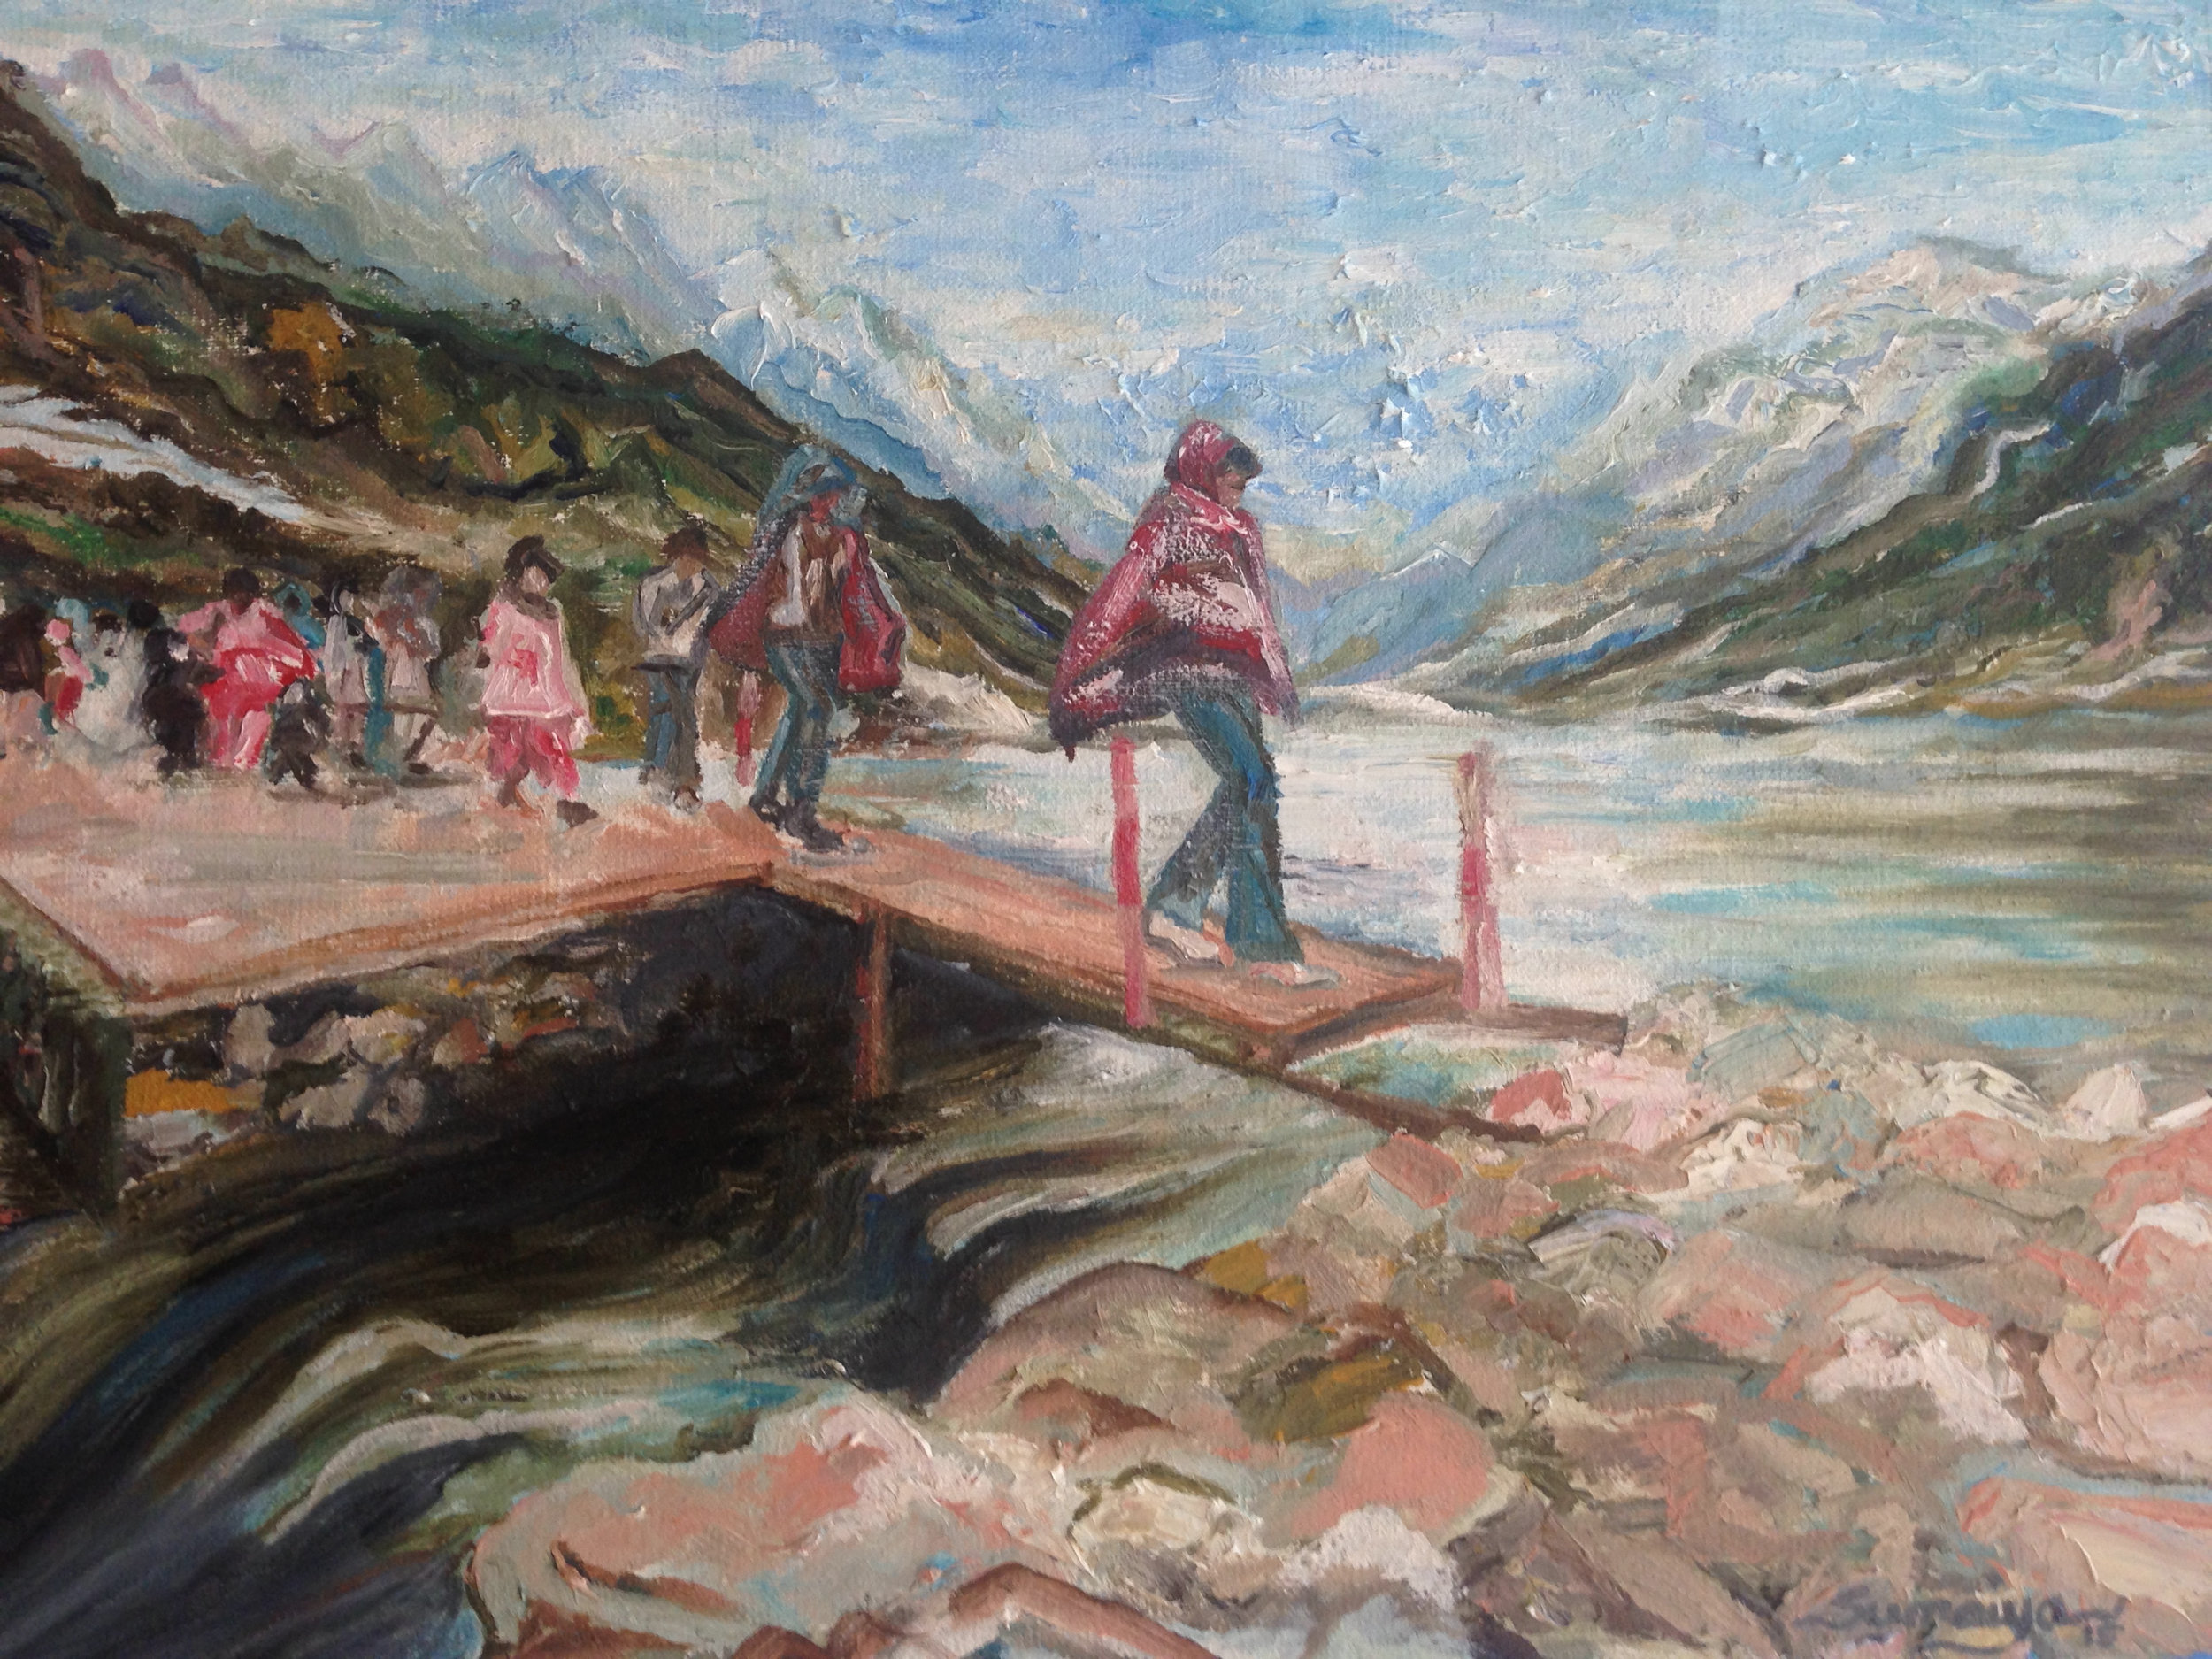 Family trip - girl crossing lake